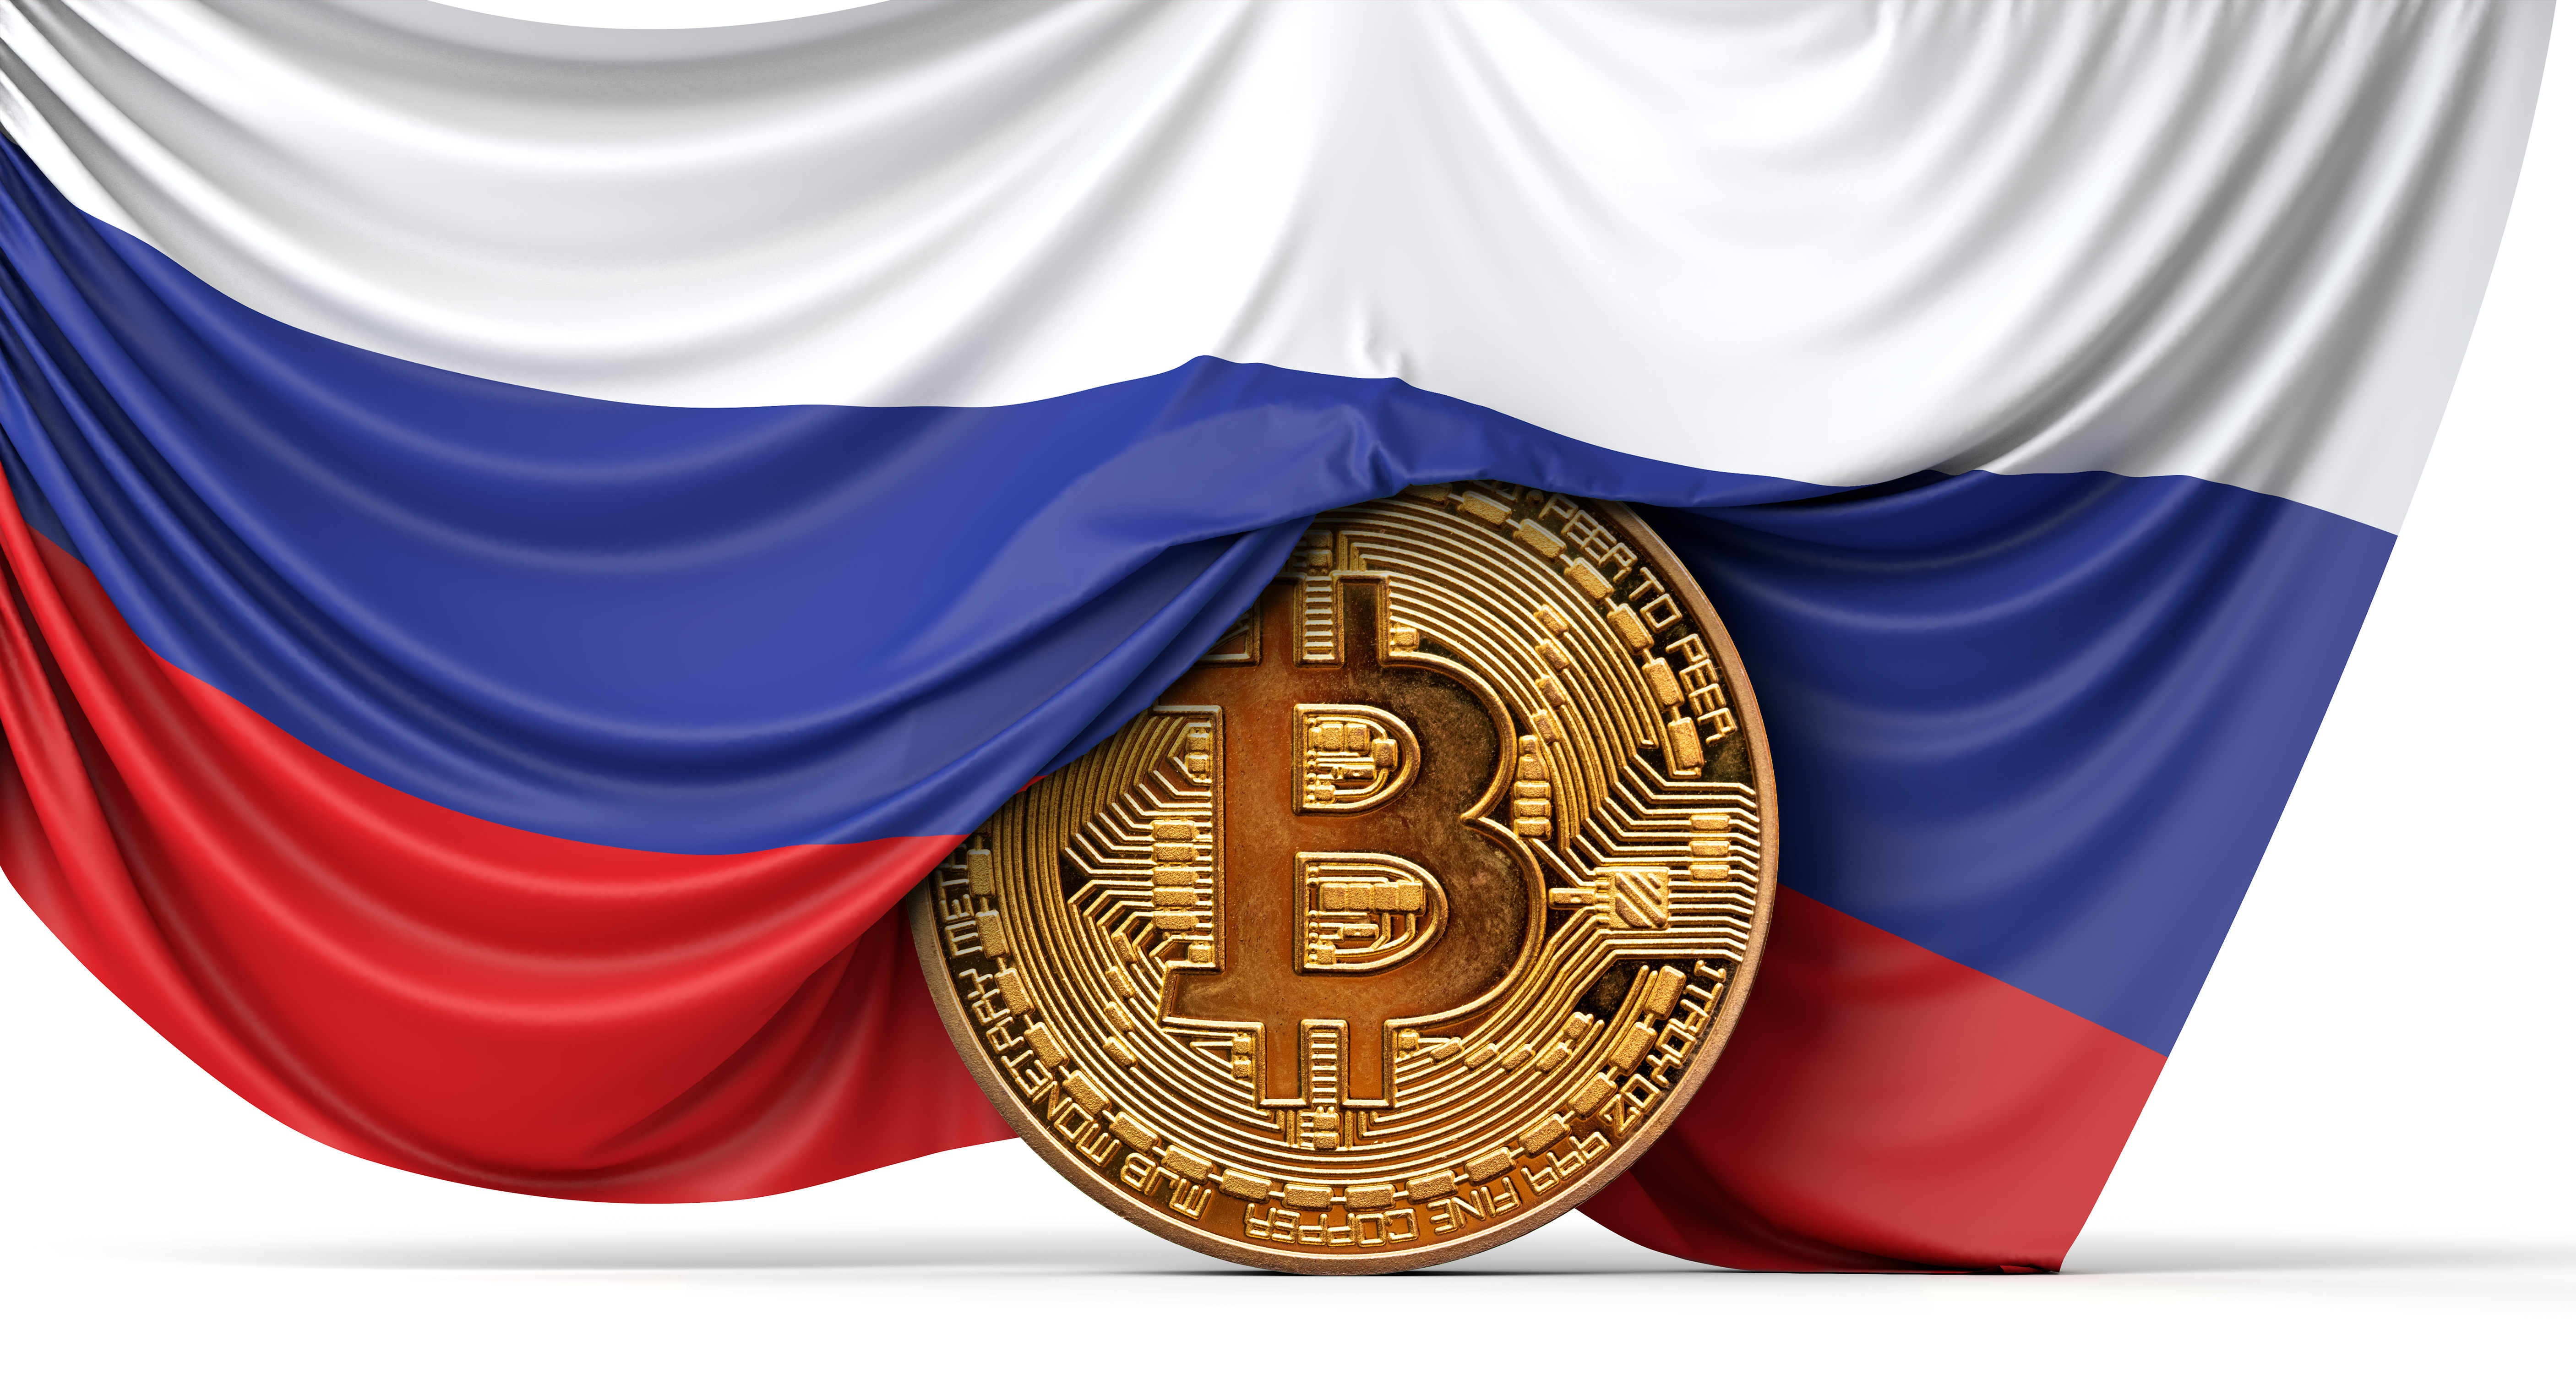 A Russian flag falls over a coin-like representation of a bitcoin token.